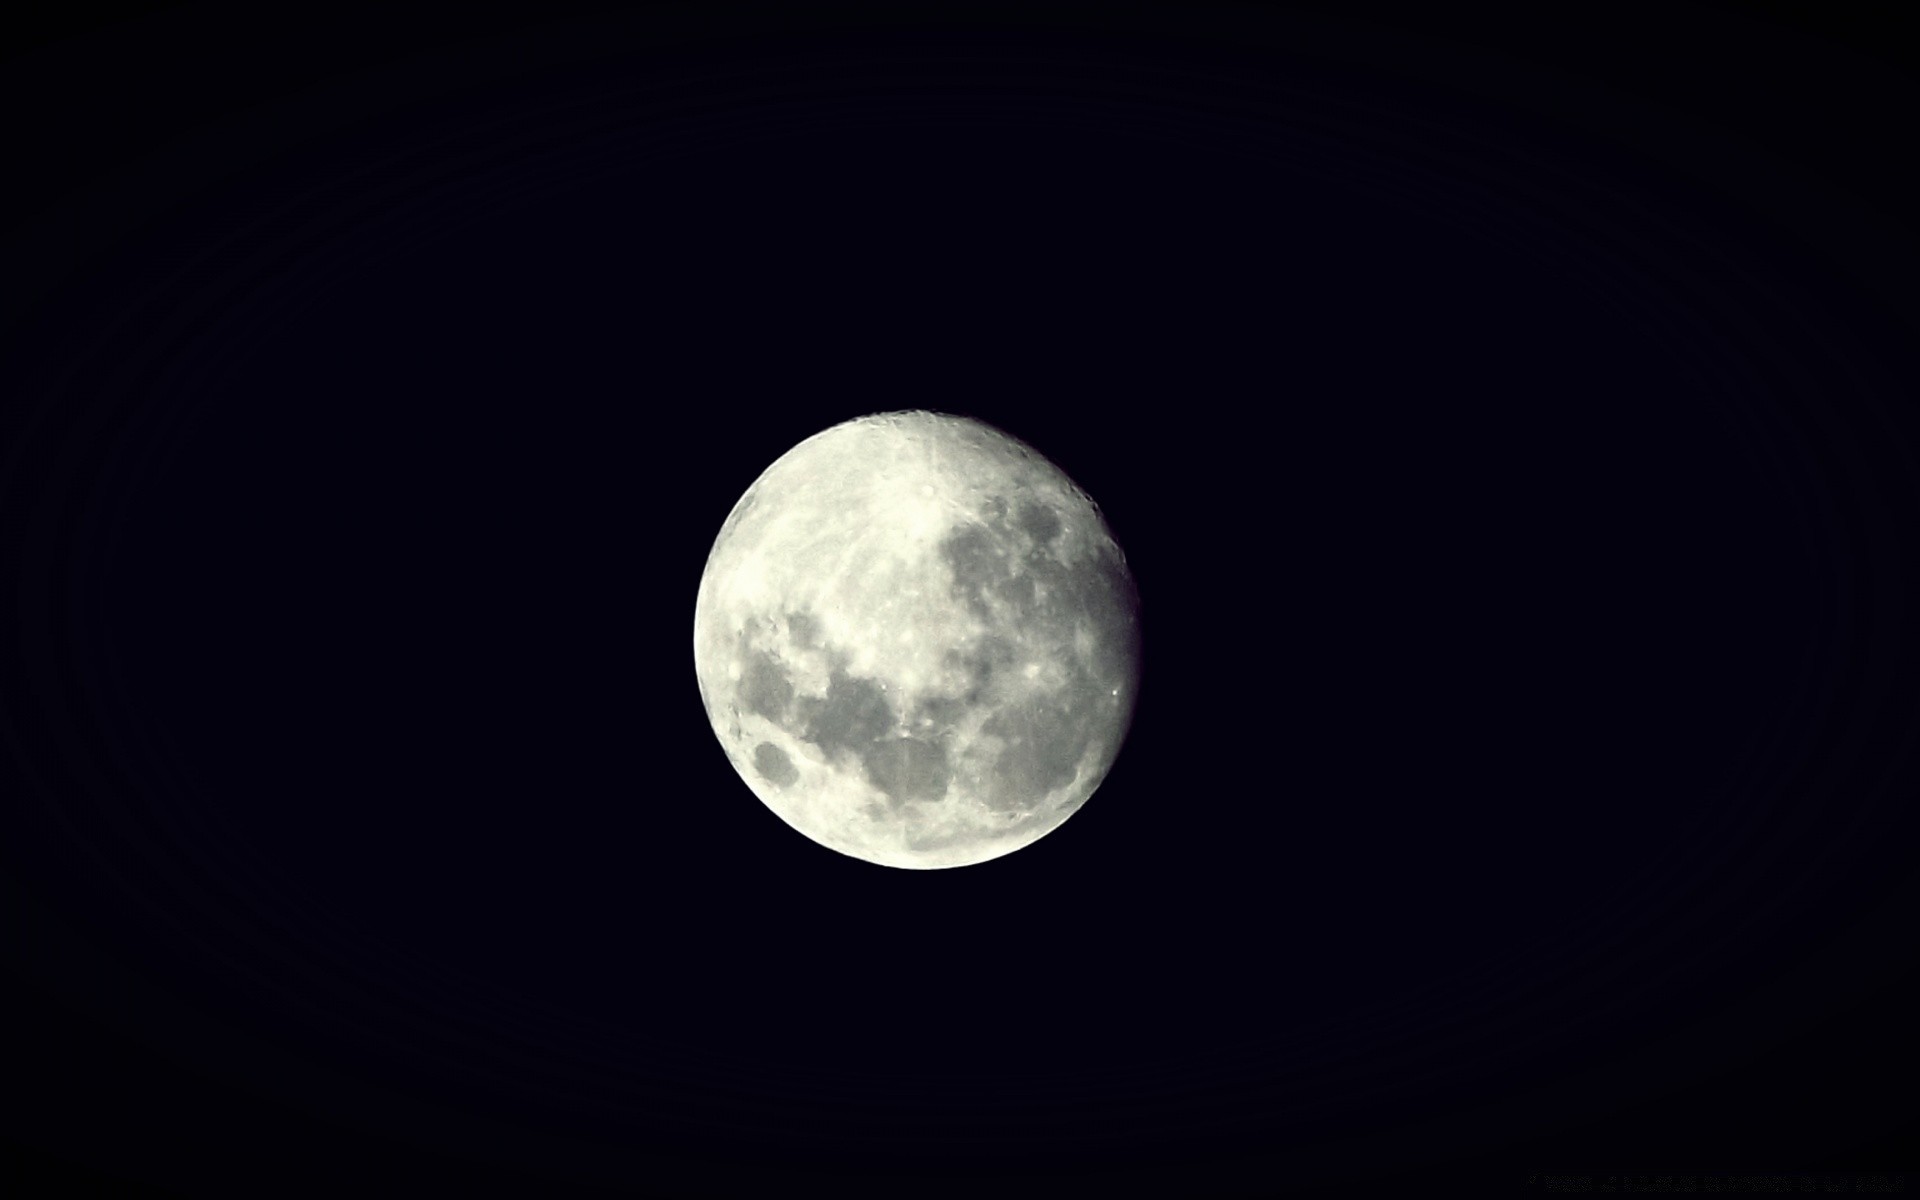 космос луна астрономия луна затмение лунный кратер темный планеты полная луна аполлон сфера астрология небо телескоп спутниковое шарообразные наука орбиты